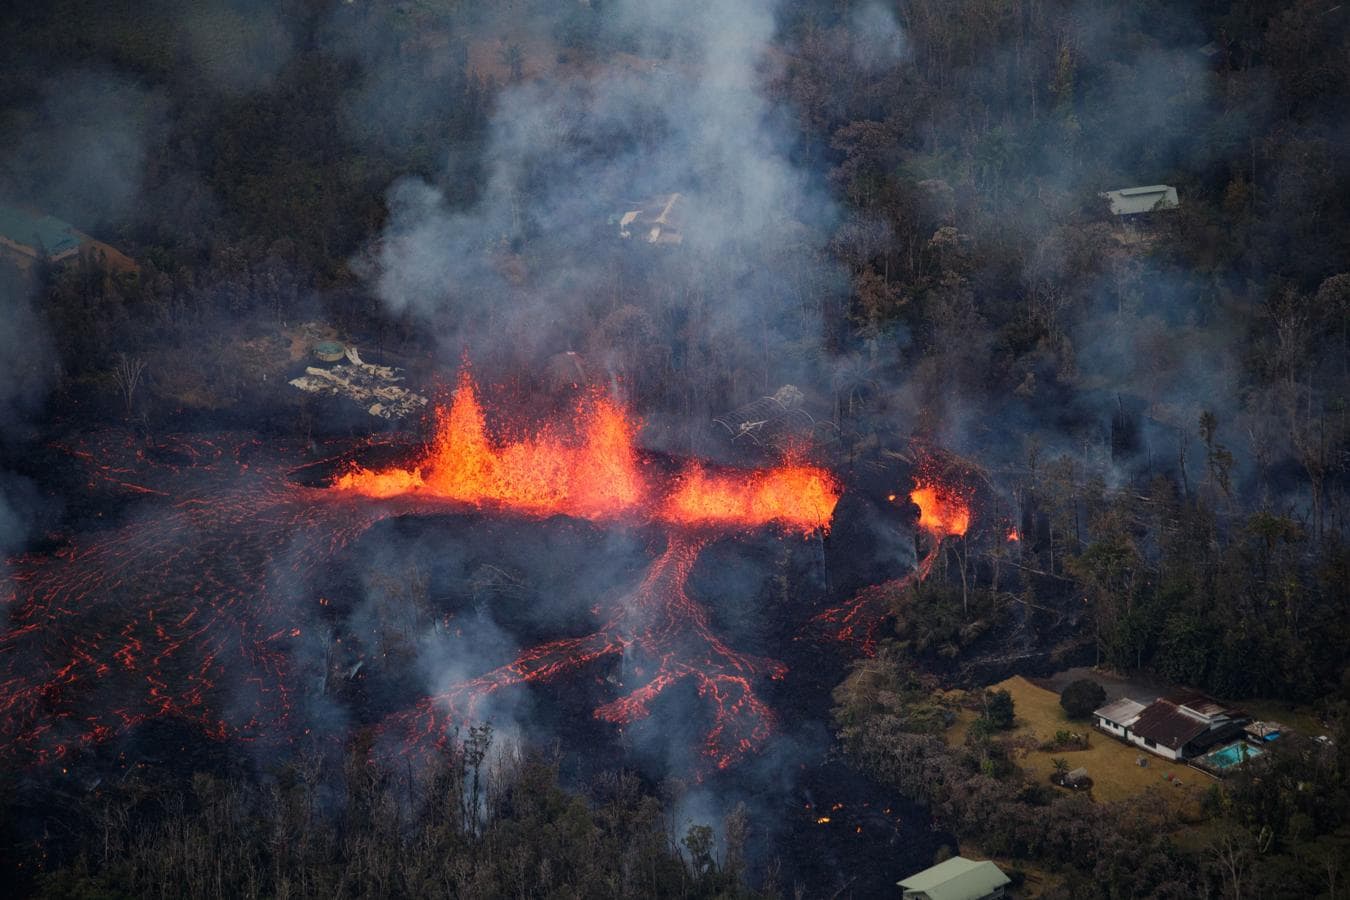 Estampa que ha dejado el volcán Kilauea, en Hawái, tras entrar en erupción.